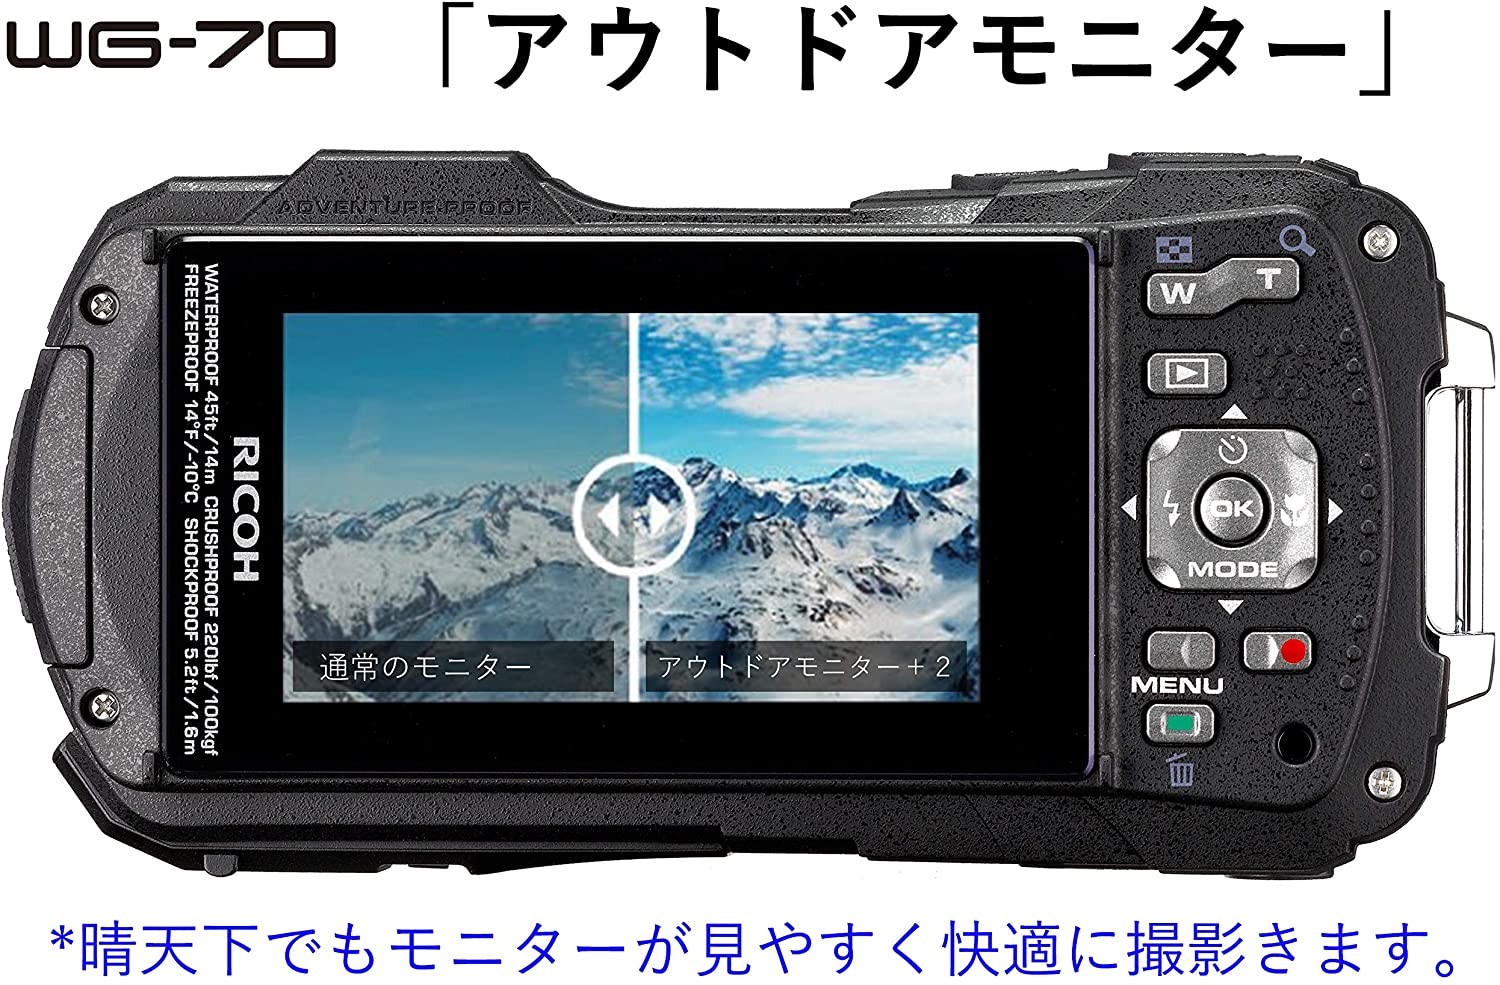 信託 RICOH 防水デジタルカメラ WG-50 オレンジ 防水14m耐ショック1.6m耐寒-10度 OR 04581